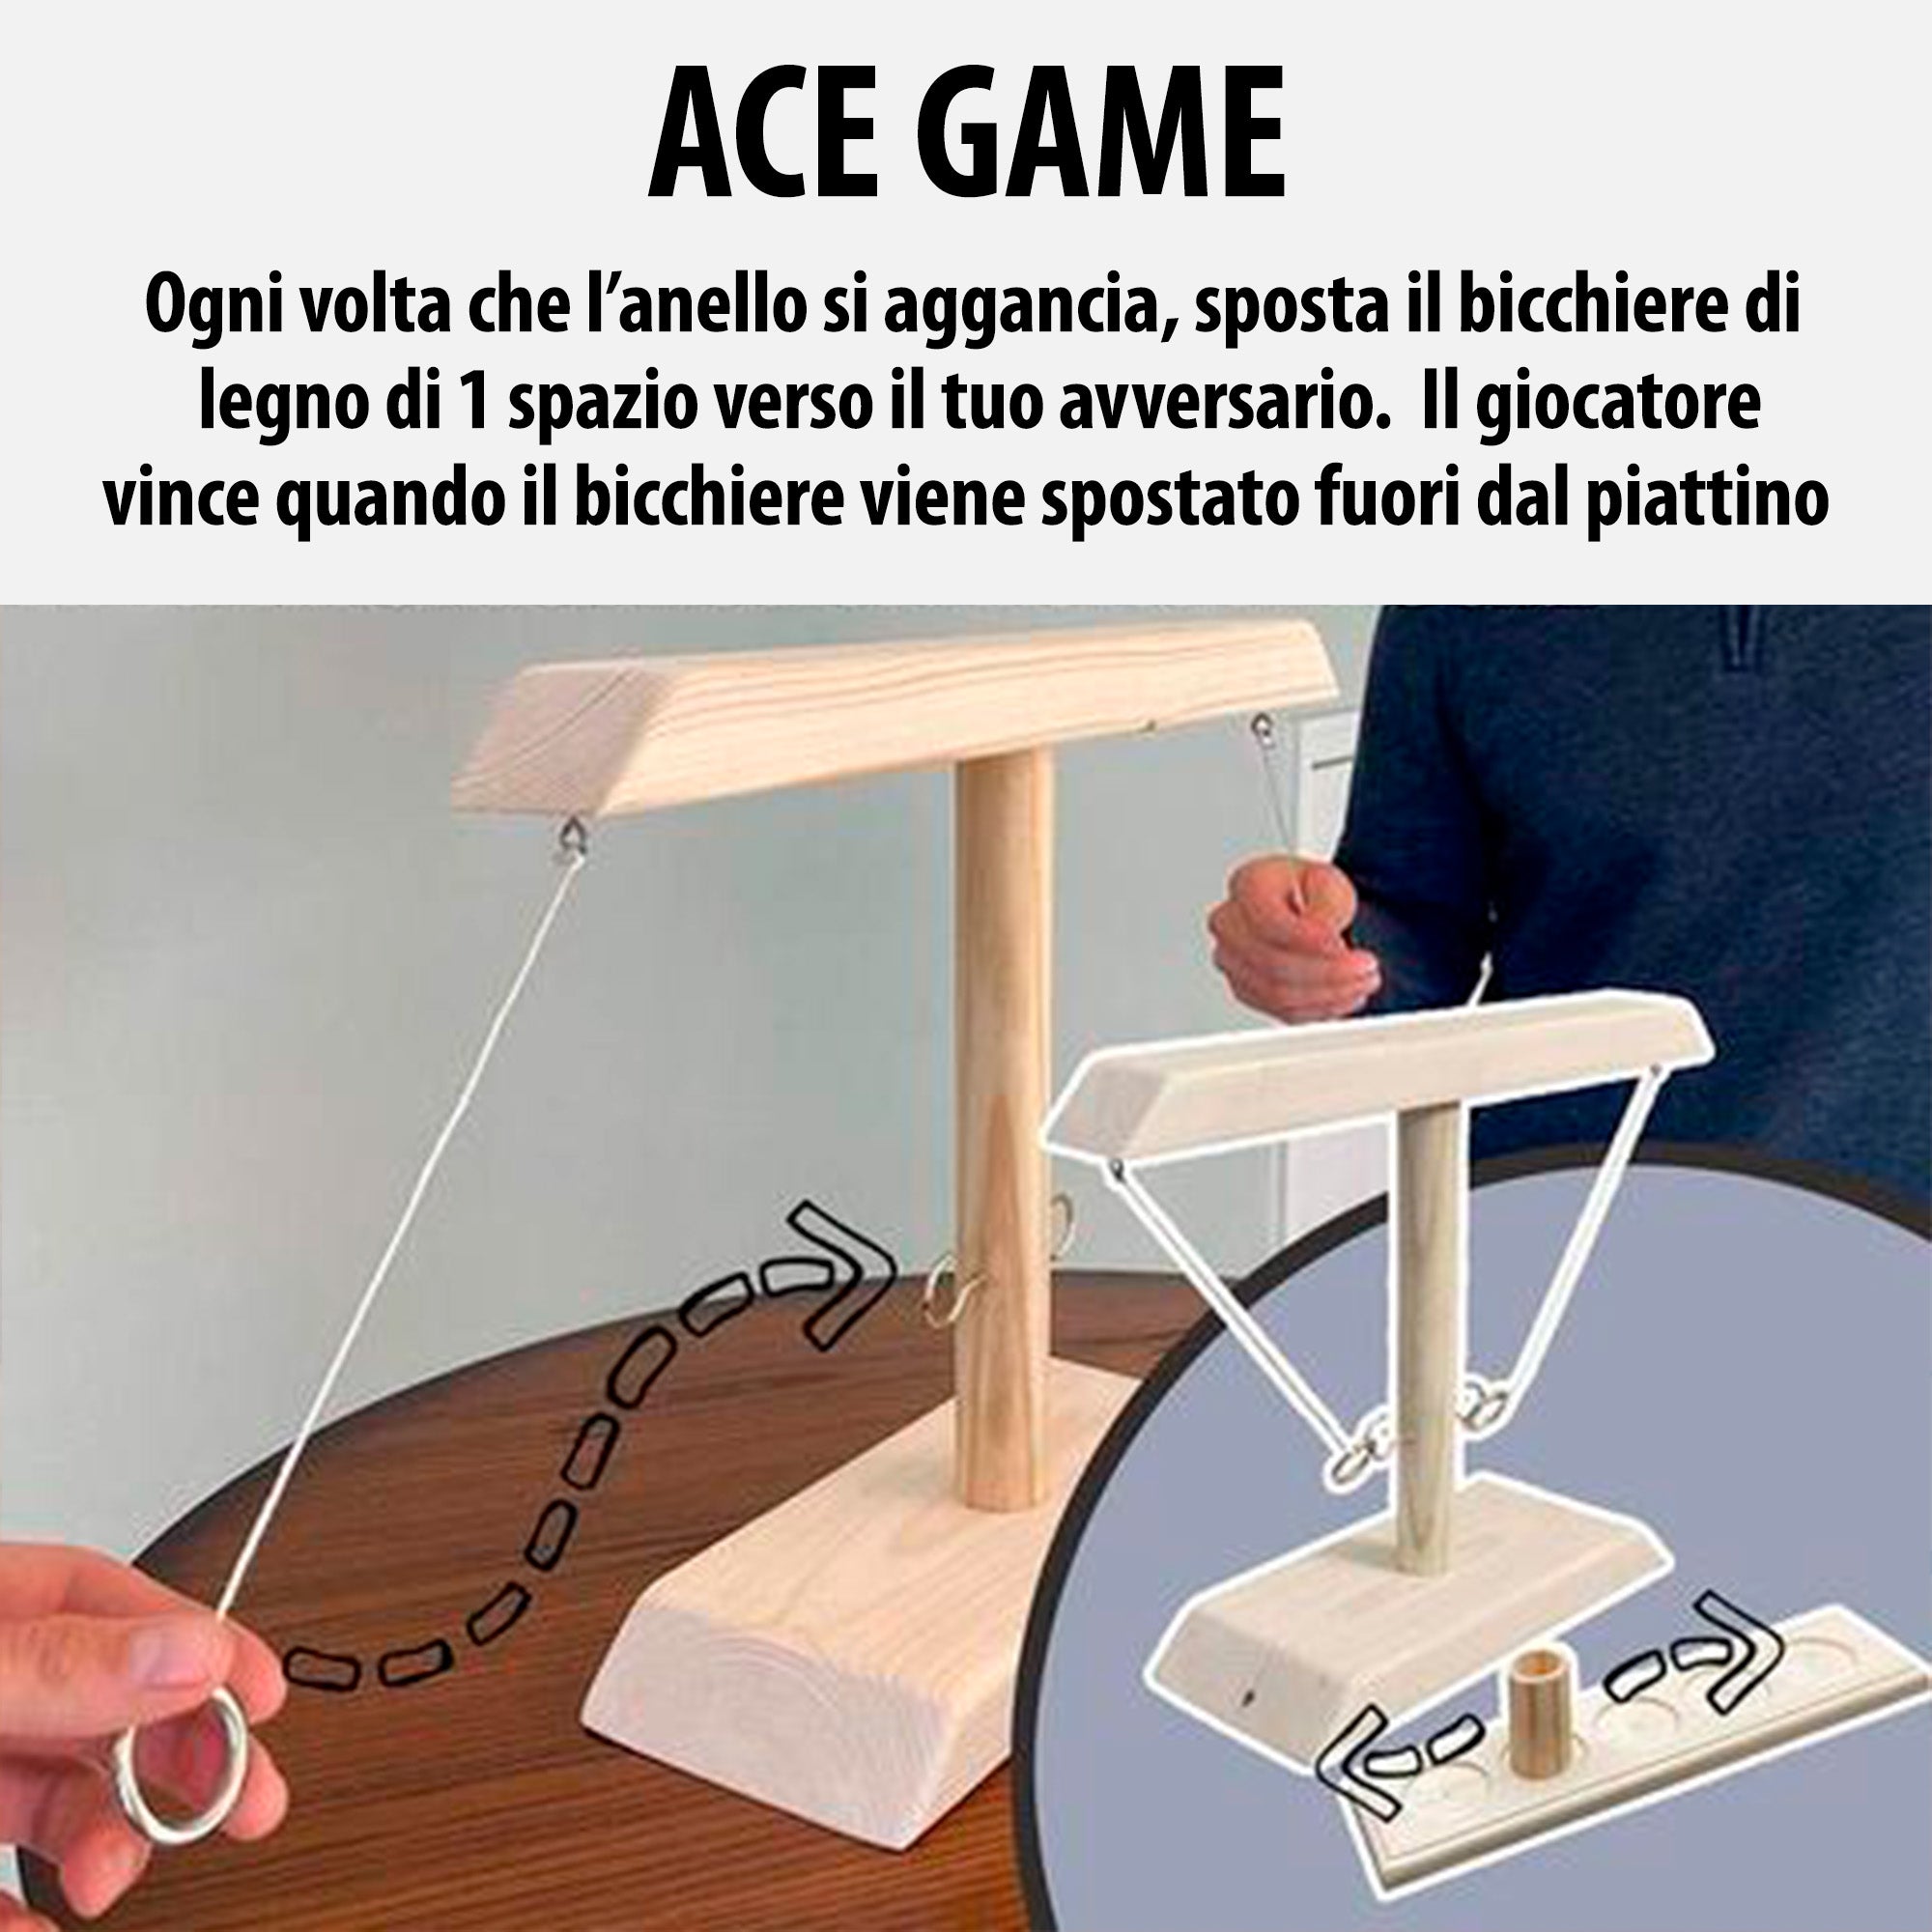 Ace Game - Gioco da tavolo